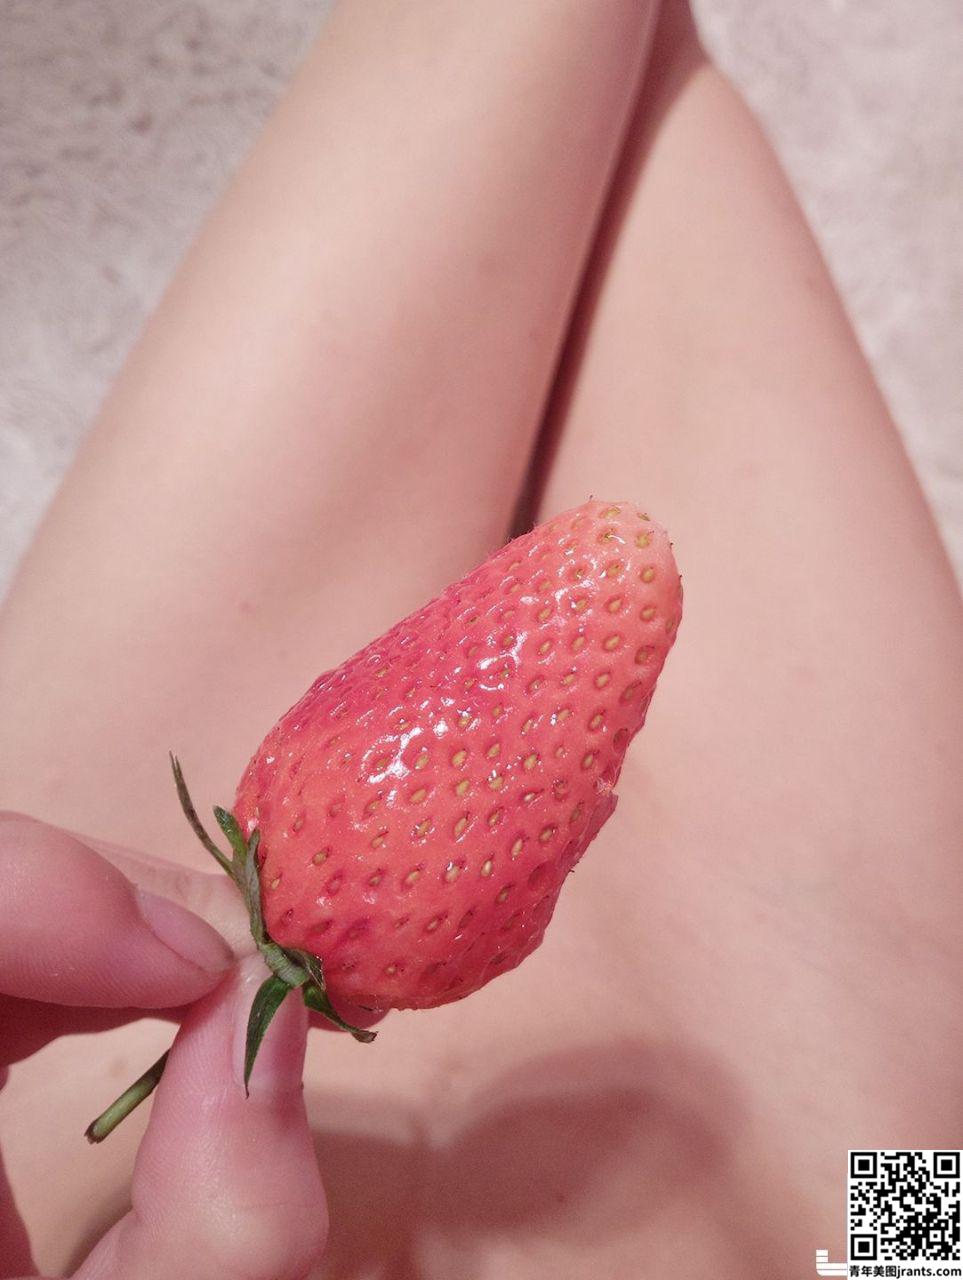 软萌萝莉小仙 下面吃草莓 &#8211; Strawberry in pussy (25P)